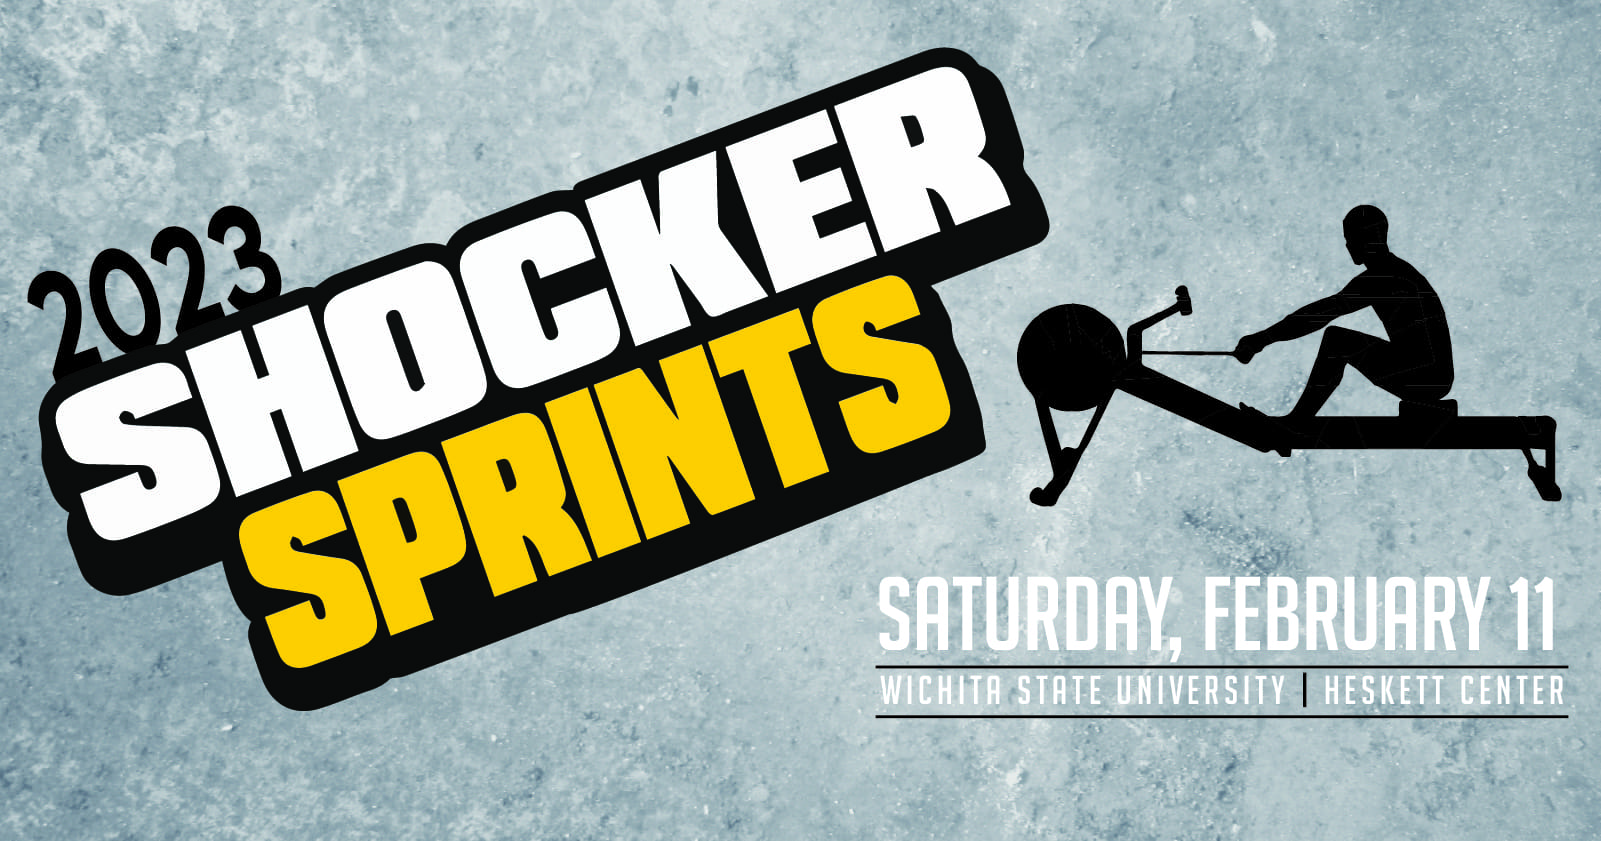 2023 Shocker Sprints, Saturday, February 11, Wichita State University Heskett Center